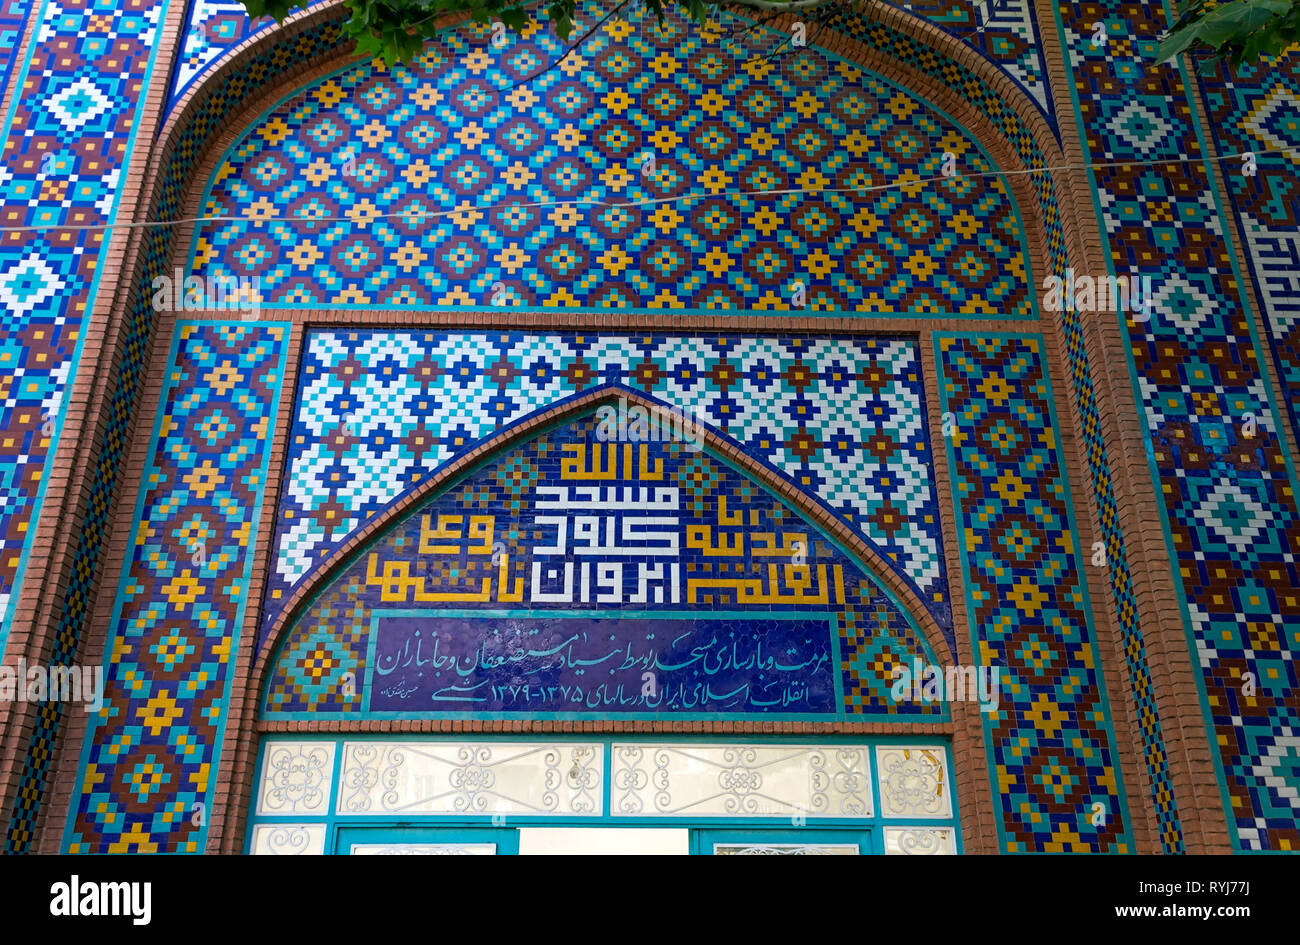 Fragment eines Blauen Moschee in Eriwan, Armenien. Die Moschee gegründet im Jahre 1765. An der Wand - Sprüche aus dem heiligen Buch der Muslime den Koran. Stockfoto